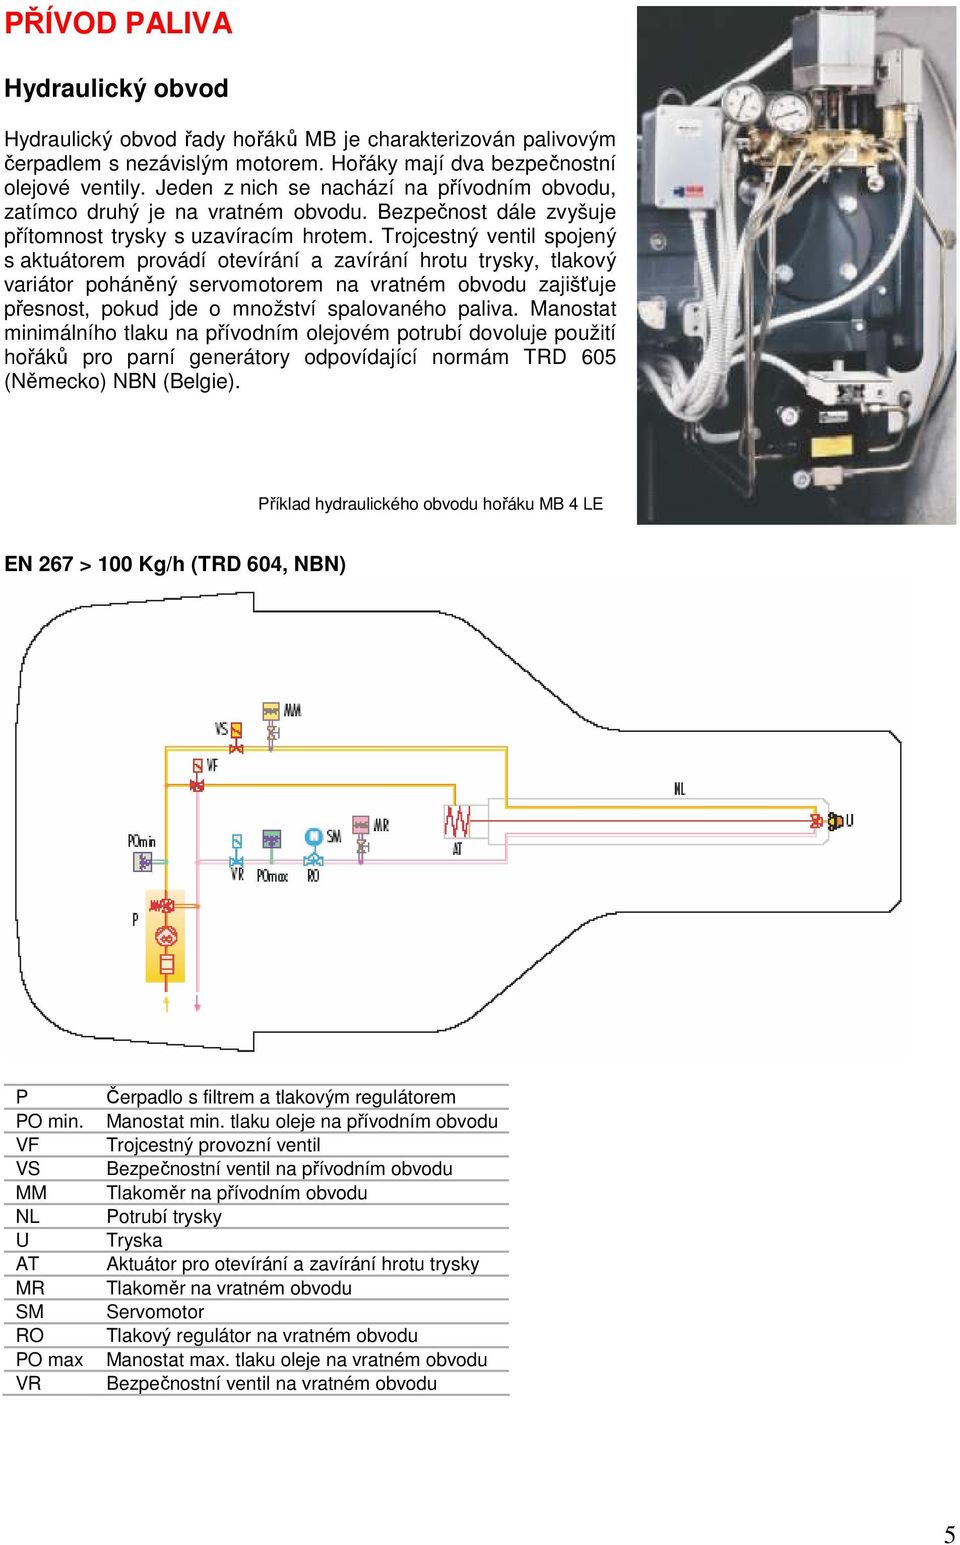 Trojcestný ventil spojený s aktuátorem provádí otevírání a zavírání hrotu trysky, tlakový variátor poháněný servomotorem na vratném obvodu zajišťuje přesnost, pokud jde o množství spalovaného paliva.